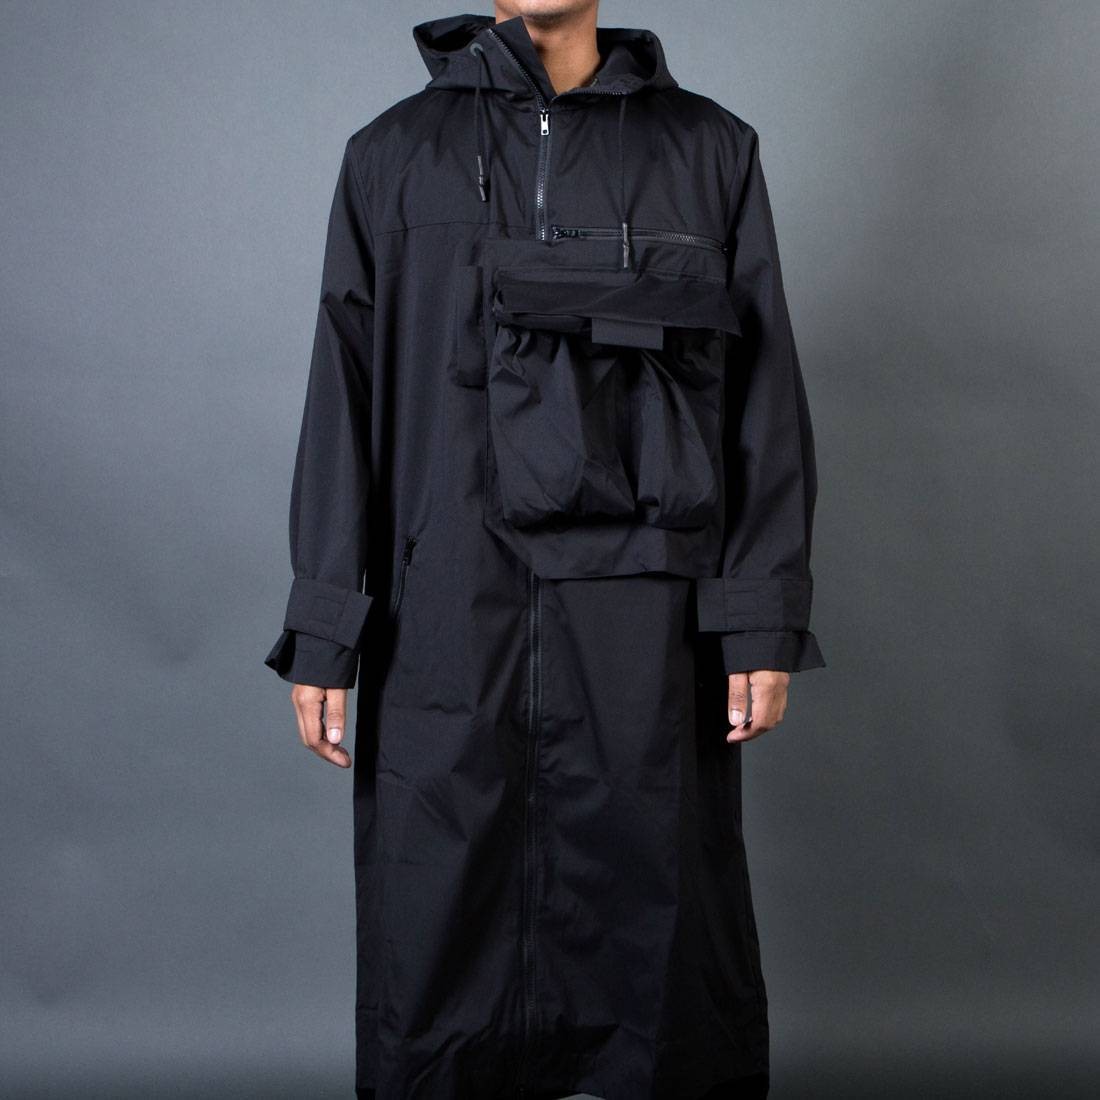 Adidas Y-3 Men Minimalist Coat black